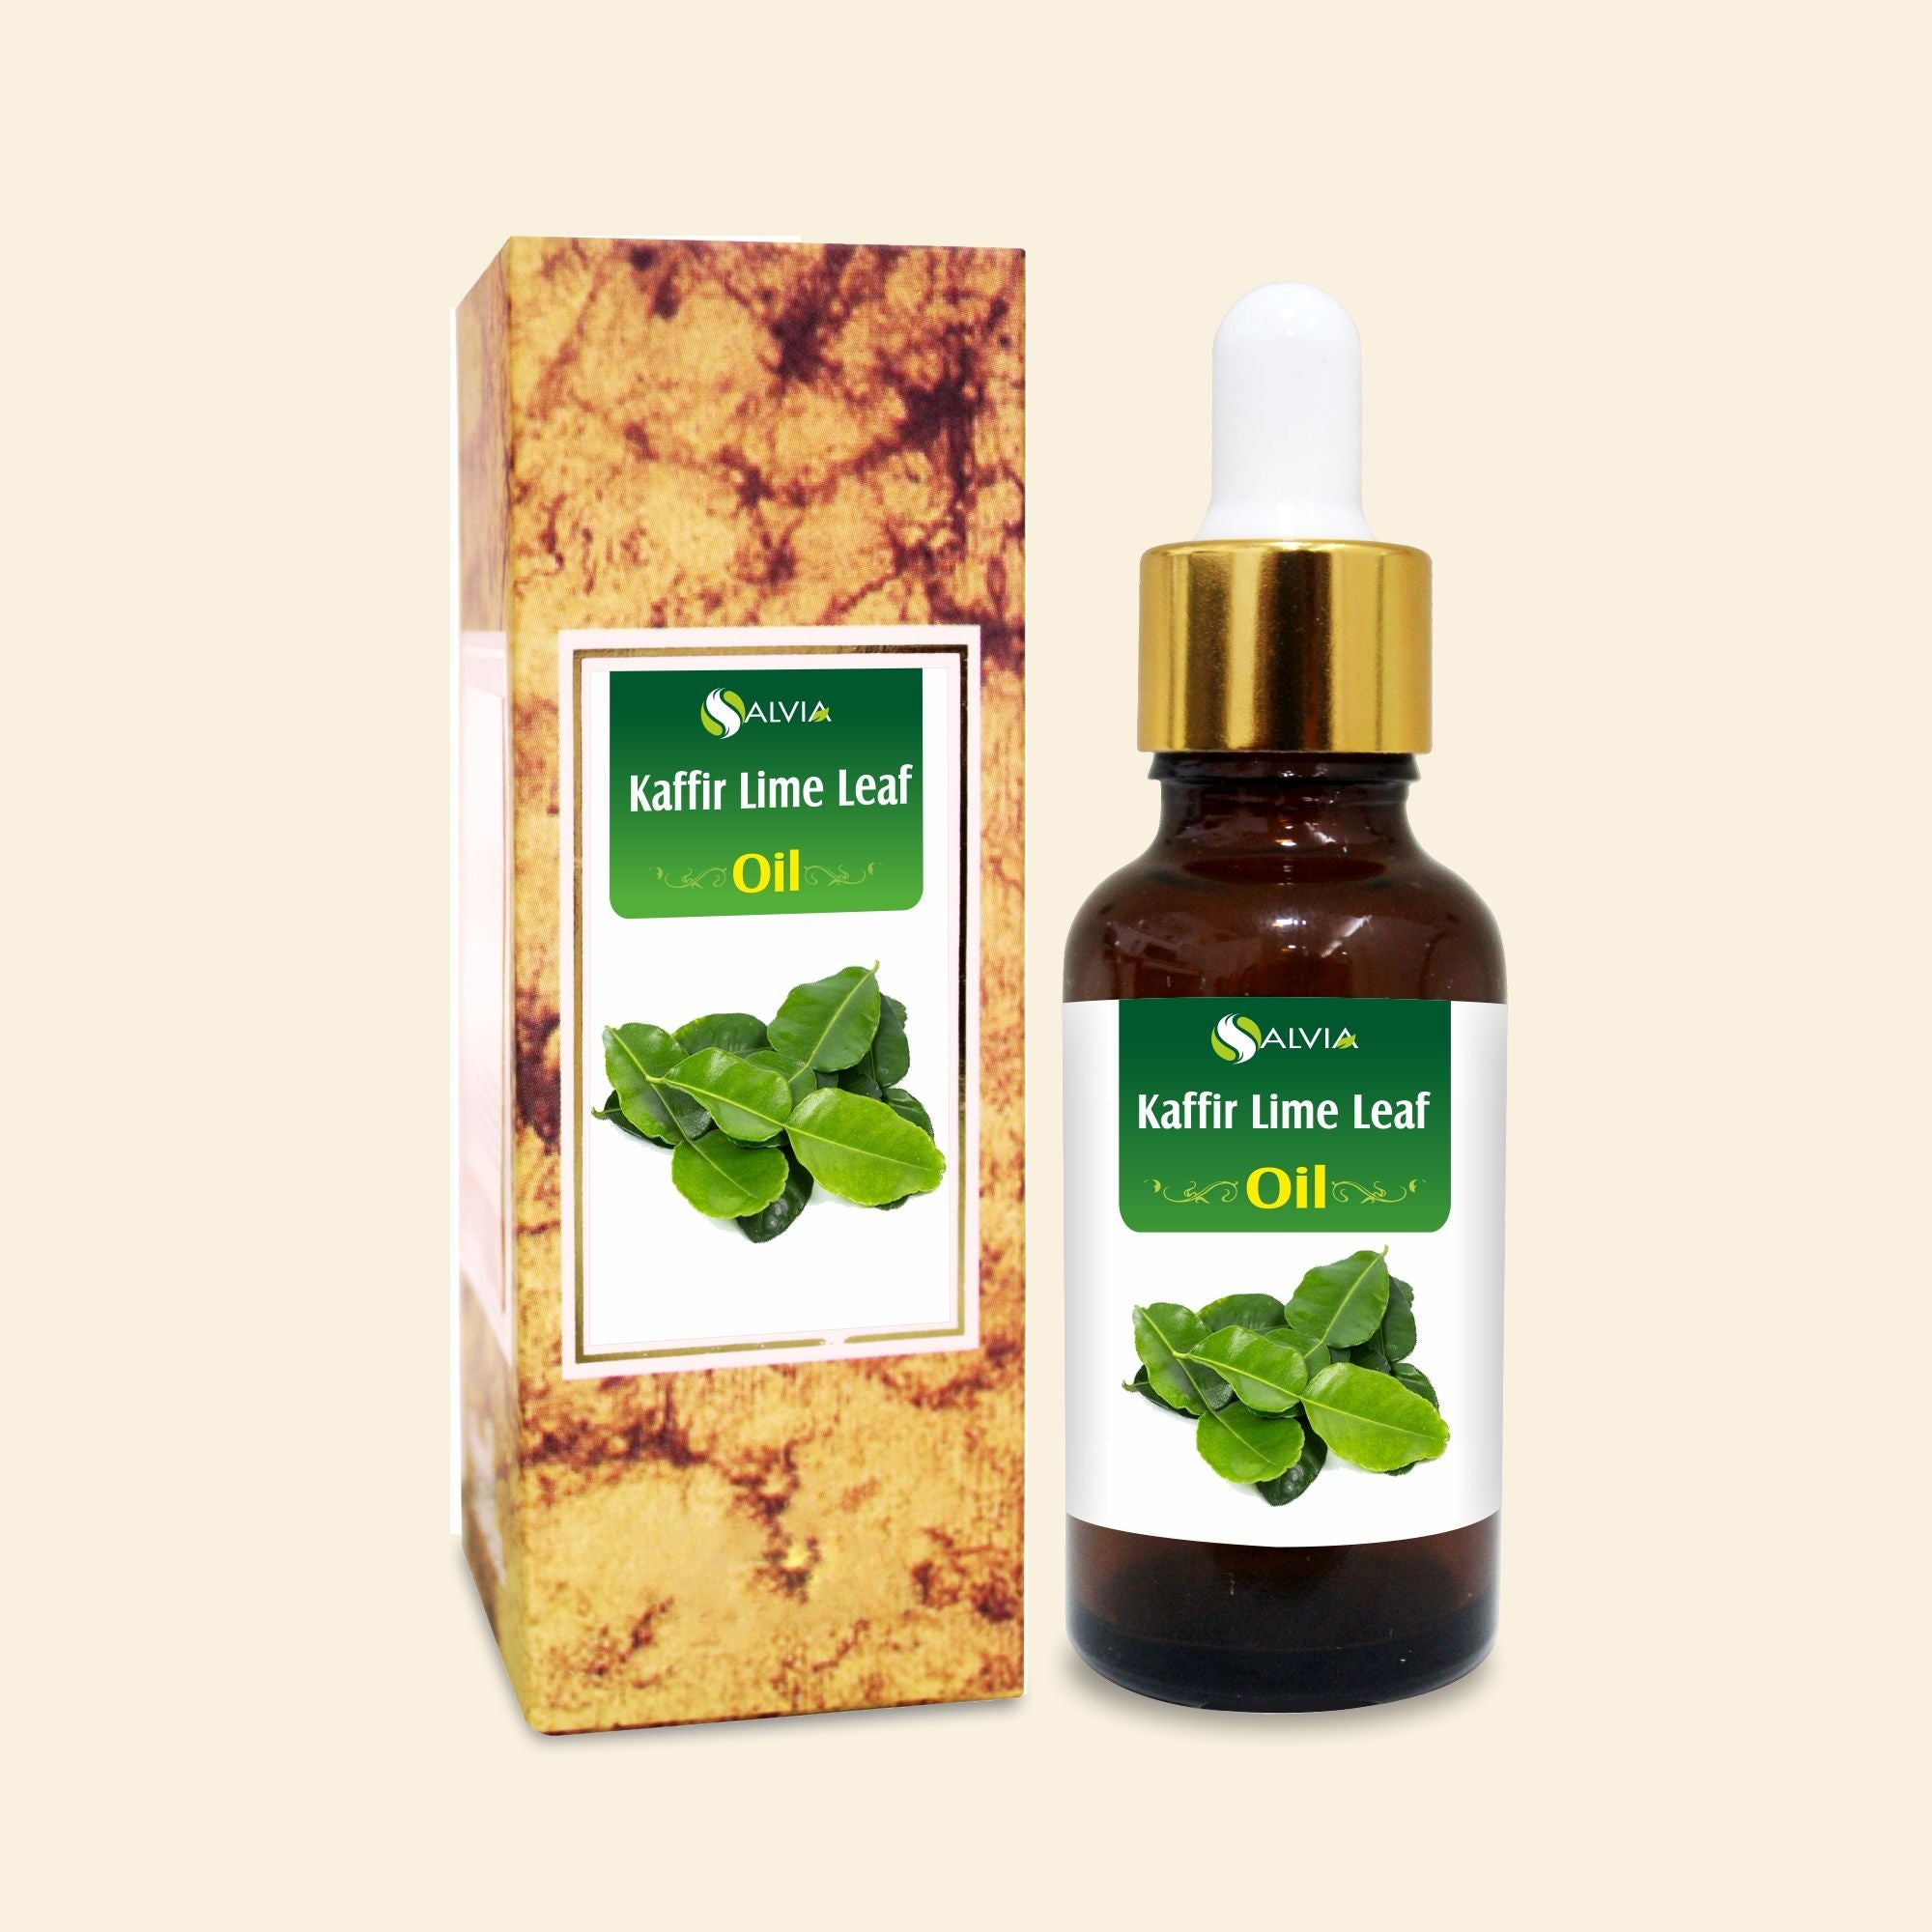 Salvia Natural Essential Oils,Hair Fall Kaffir Lime Leaf Oil (Citrus Hystrix) Natural Essential Oil